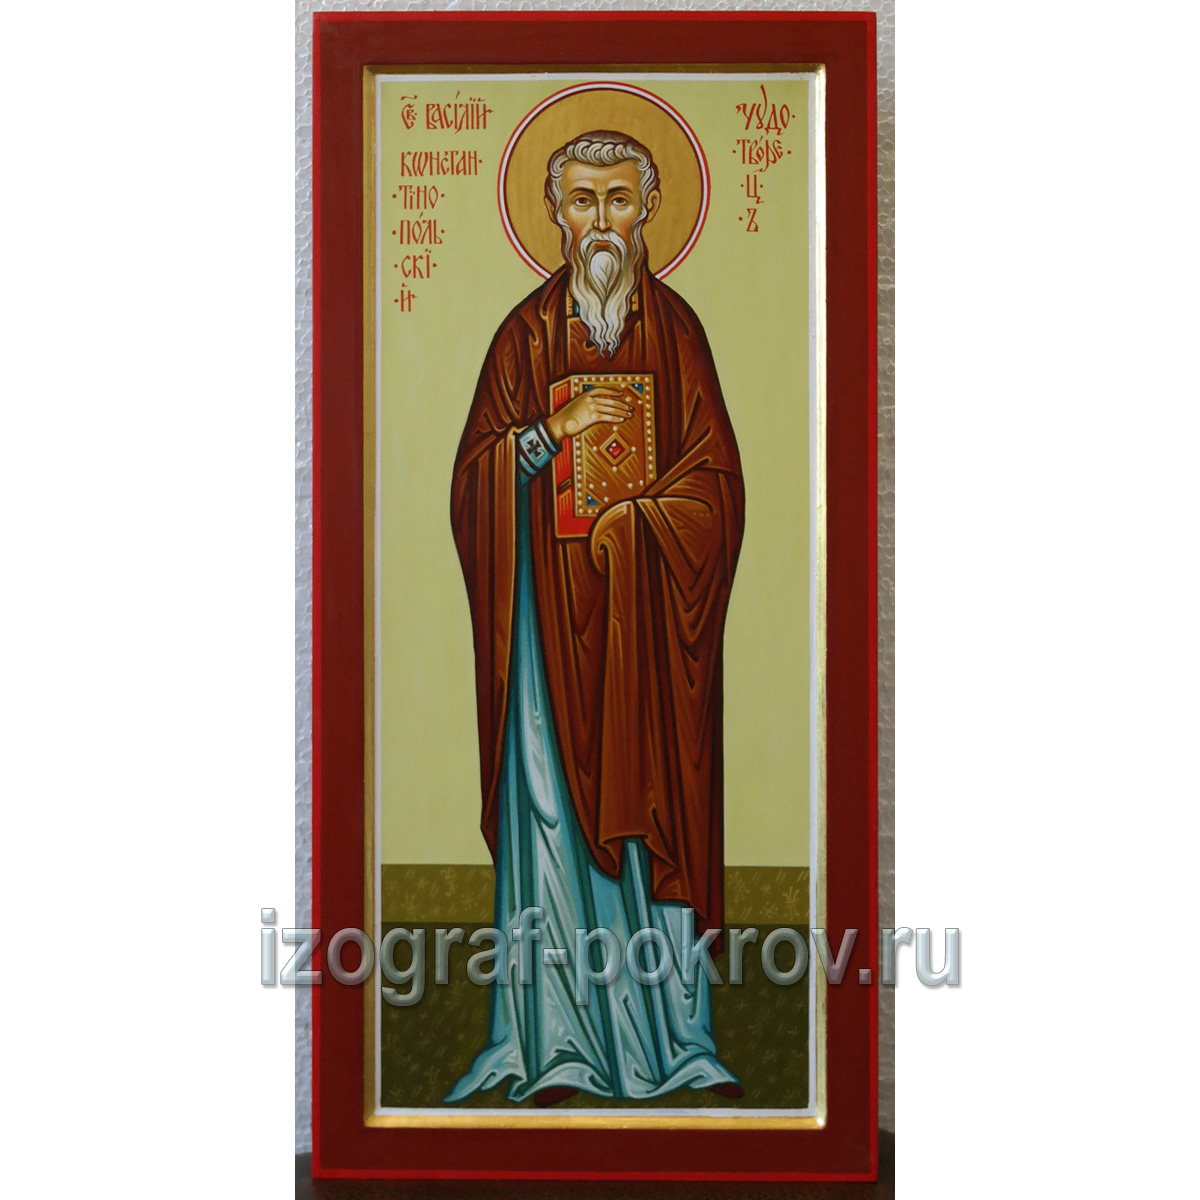 Рукописная икона Василий Константинопольский